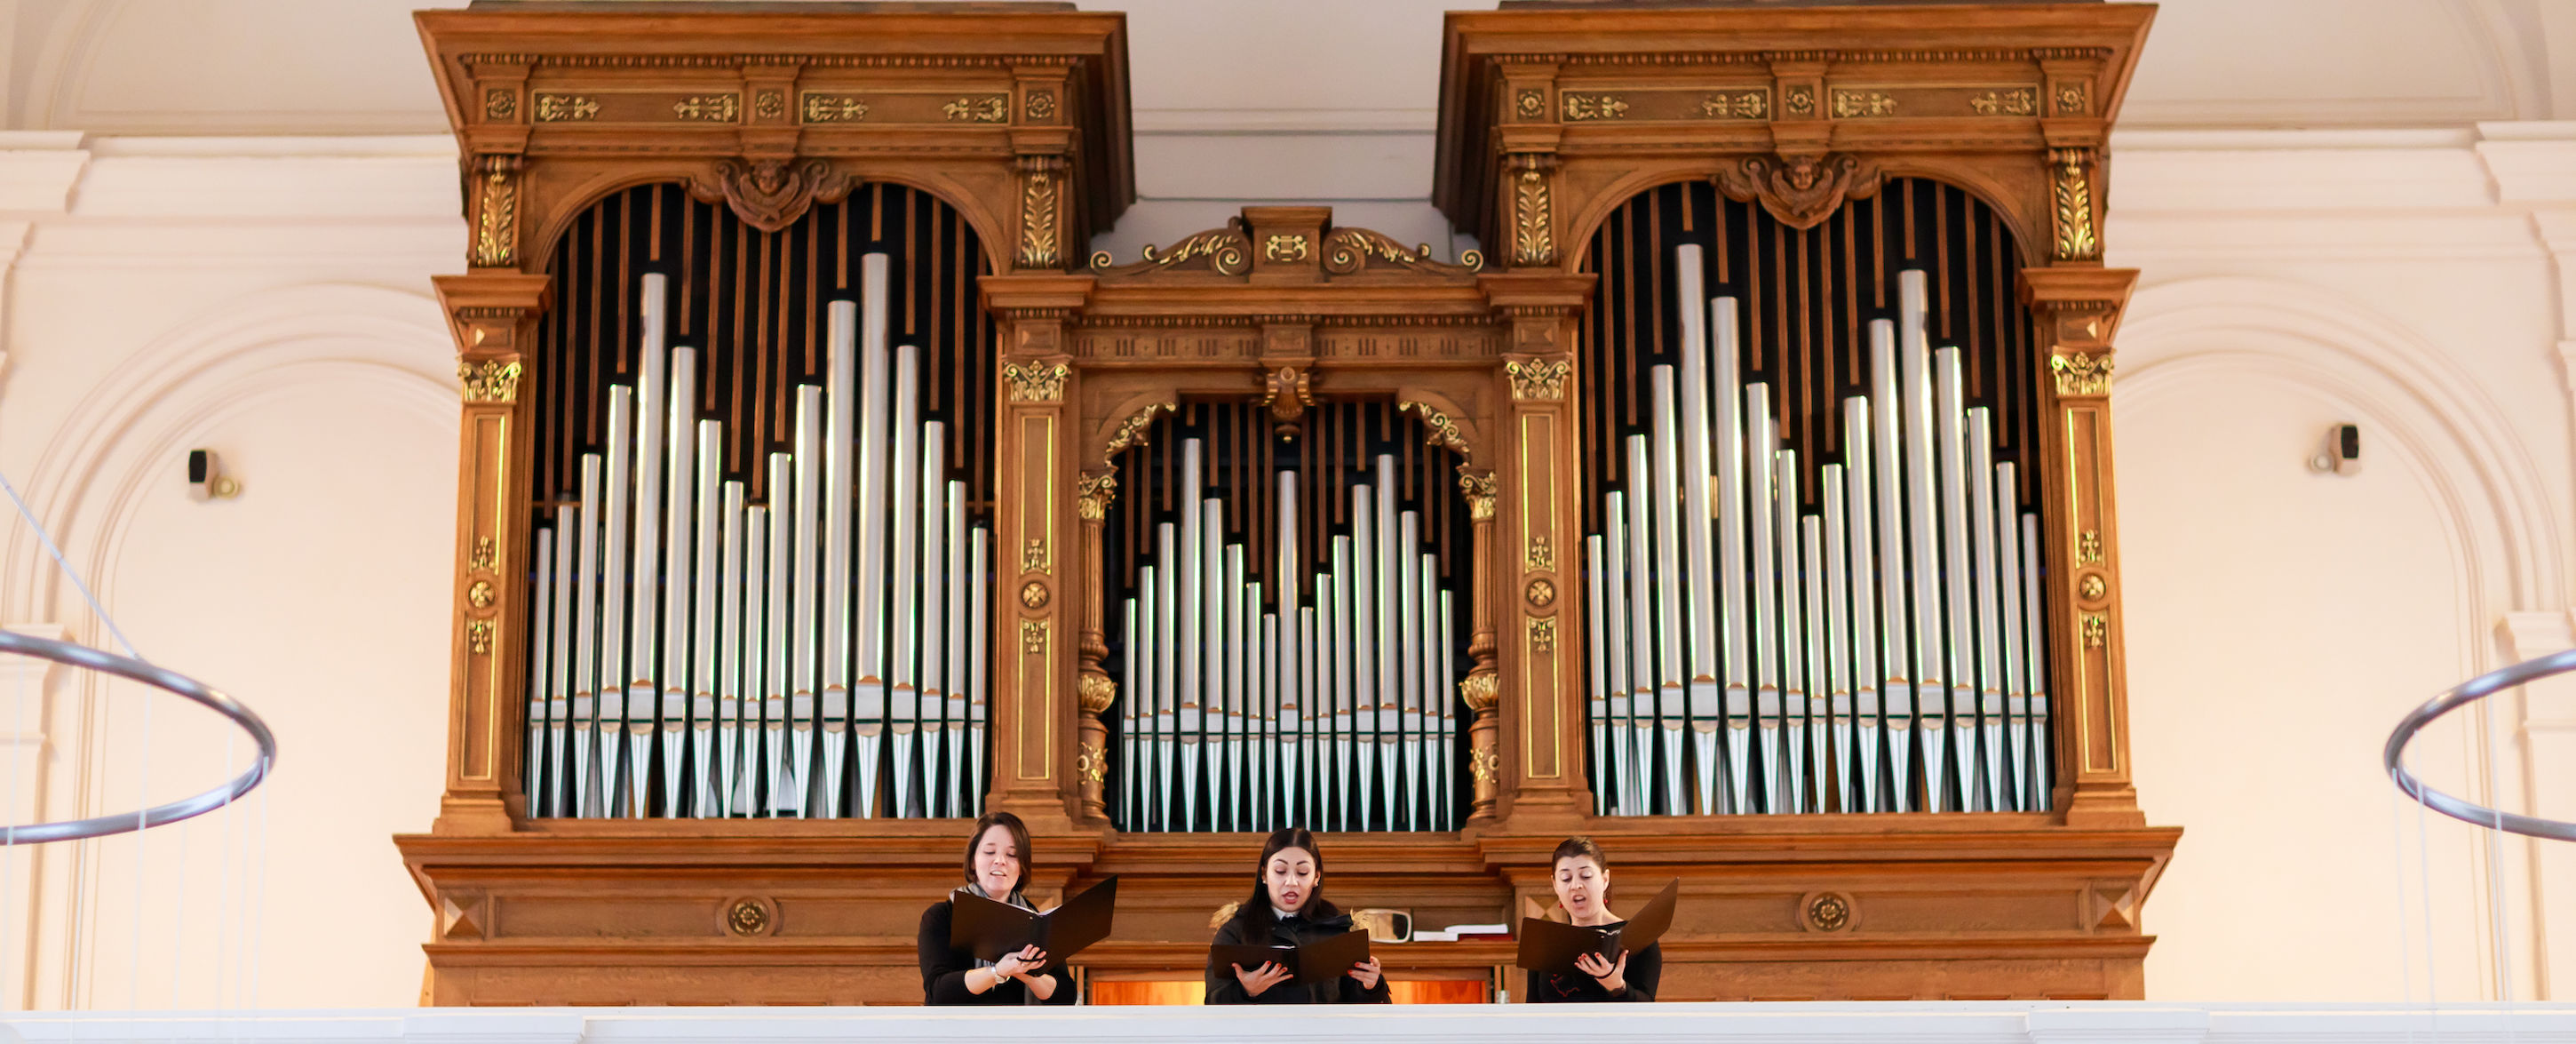 Sängerinnen Augustinum Orgel